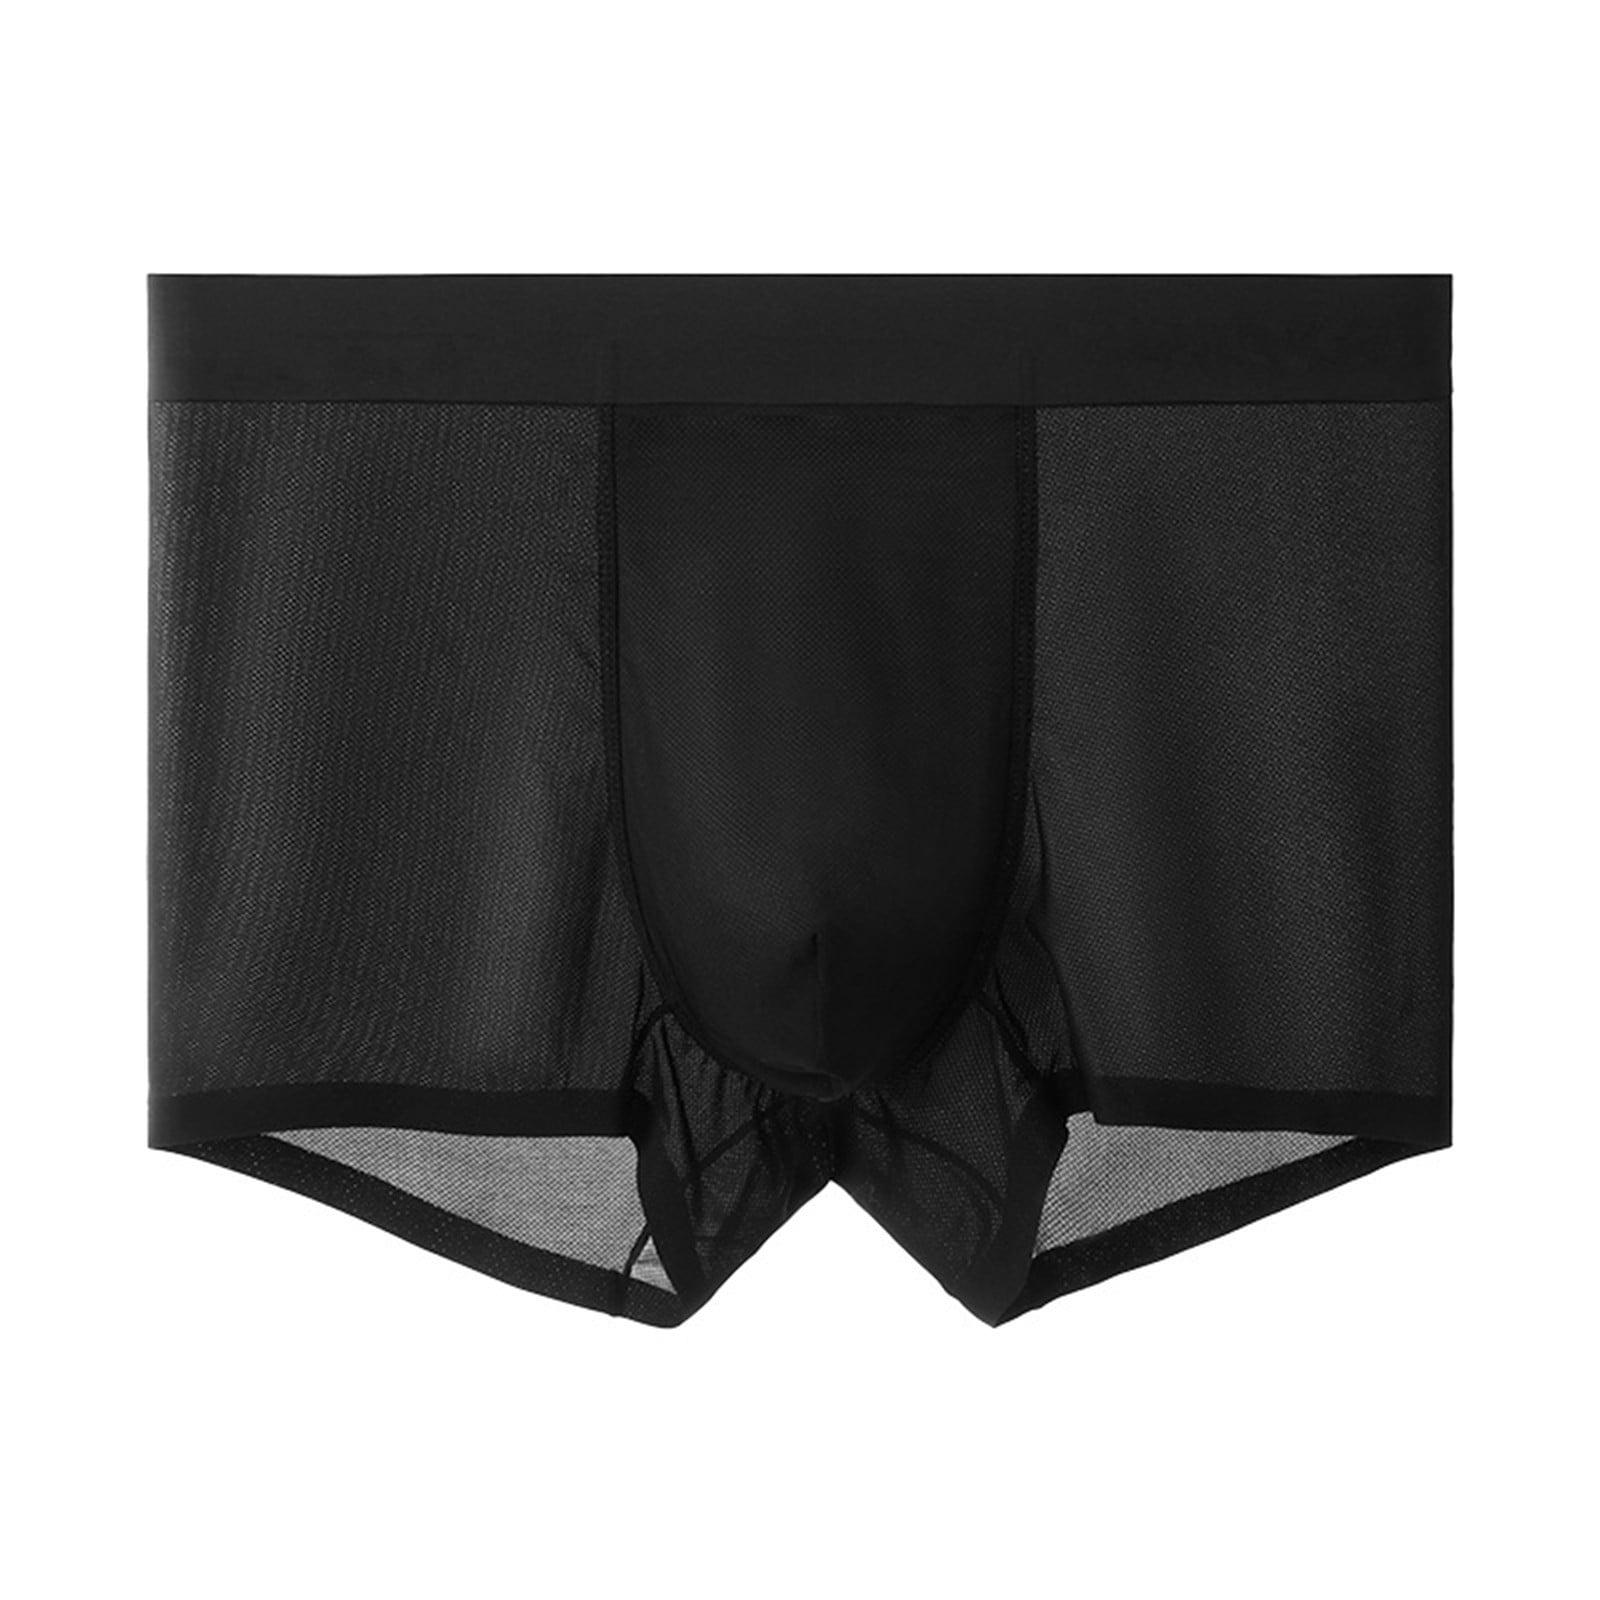 KaLI_store Briefs for Men Pack Men's Underwear Boxer Briefs Cotton ...